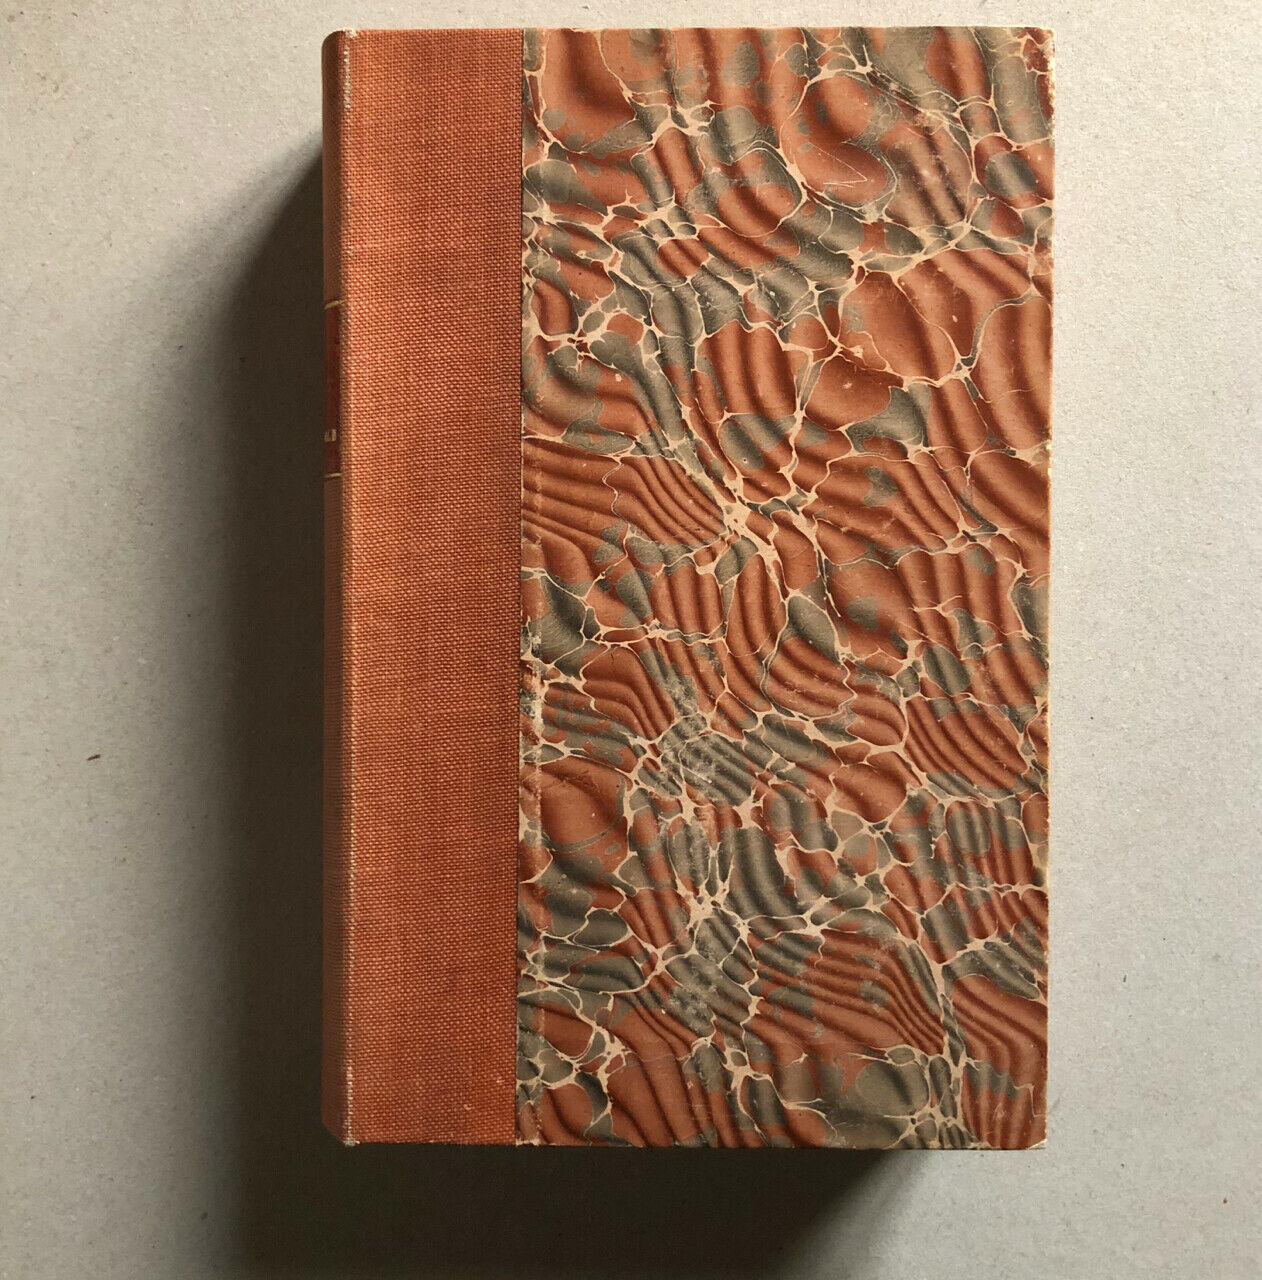 Delegorgue, Adulphe — Voyage dans l'Afrique australe, notamment dans le territoire de Natal — 9 planches hors texte et 1 carte — édition originale — A. René & cie. — 1847